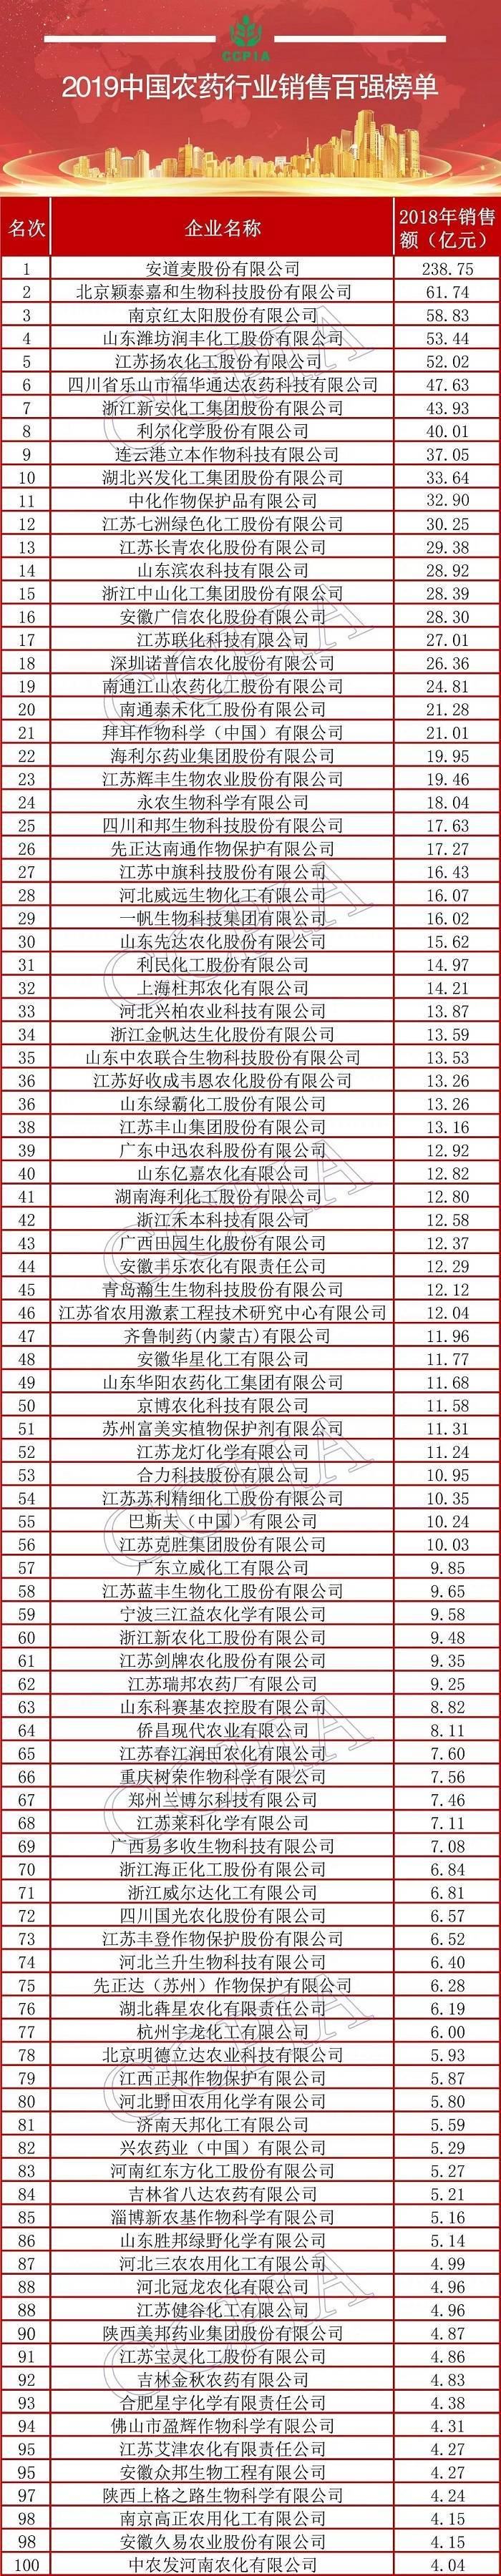 2019中国农药行业销售百强榜隆重发布 安道麦独占鳌头